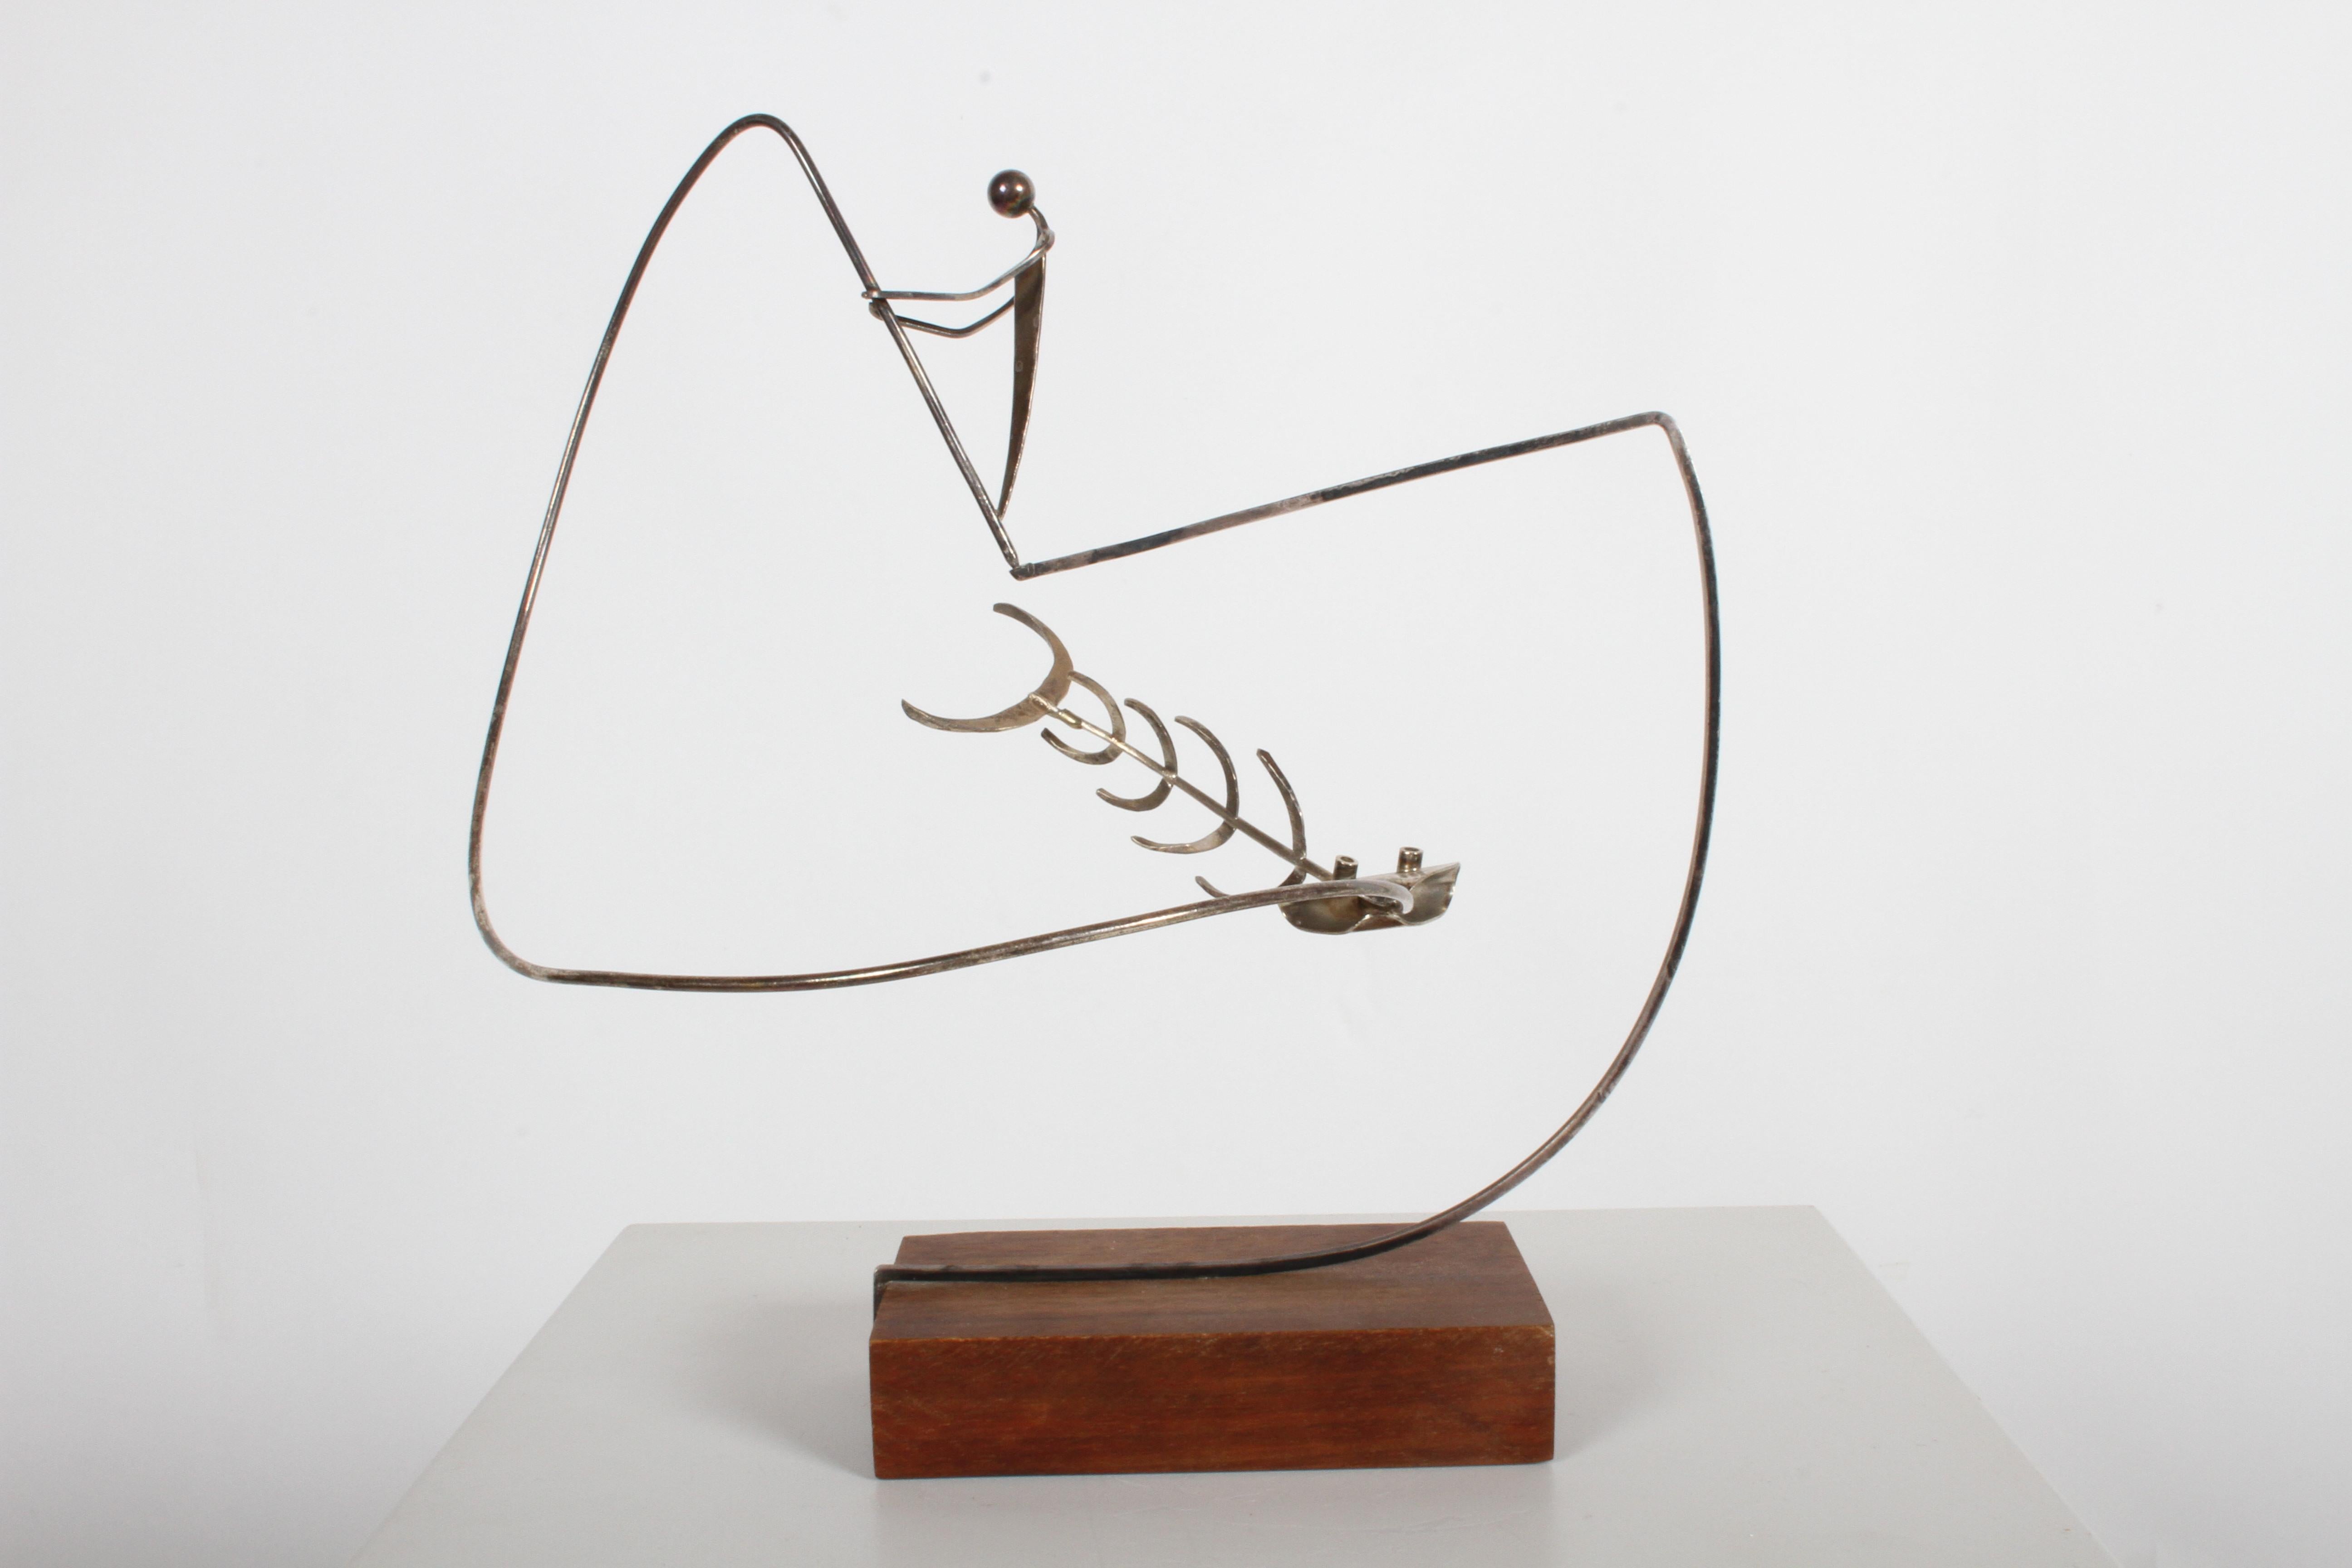 Paul A. Lobel (1899-1983) orfèvre, sculpteur et artiste moderniste. Lobel a vendu ses bijoux et ses œuvres d'art dans sa boutique de Greenwich village dans les années 1940 et 1950. Cette sculpture cinétique en deux pièces en sterling représente un